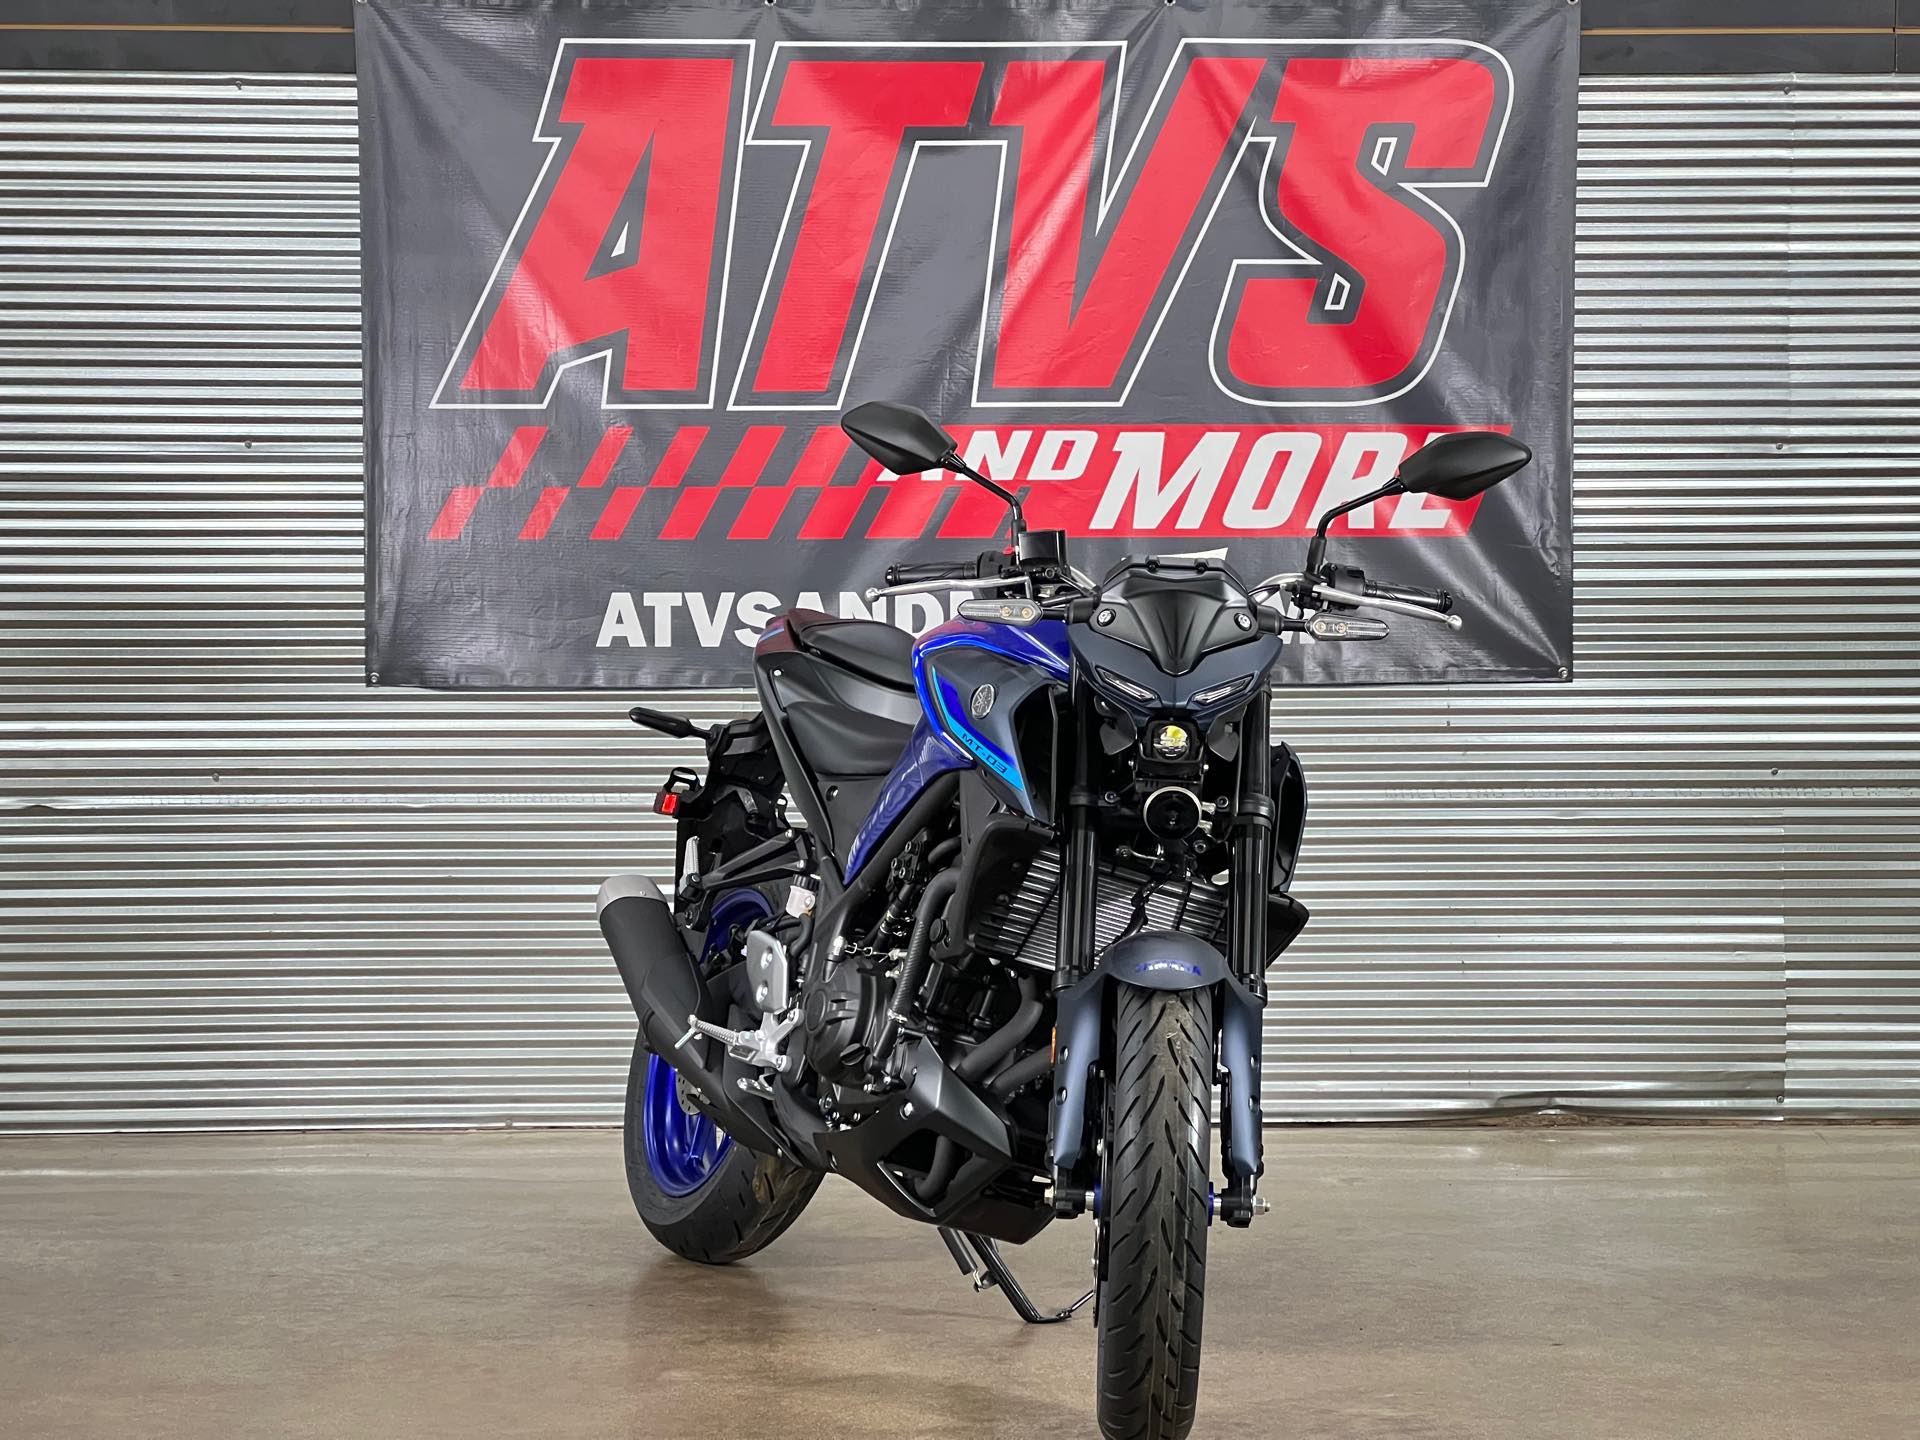 2022 Yamaha MT 03 at ATVs and More